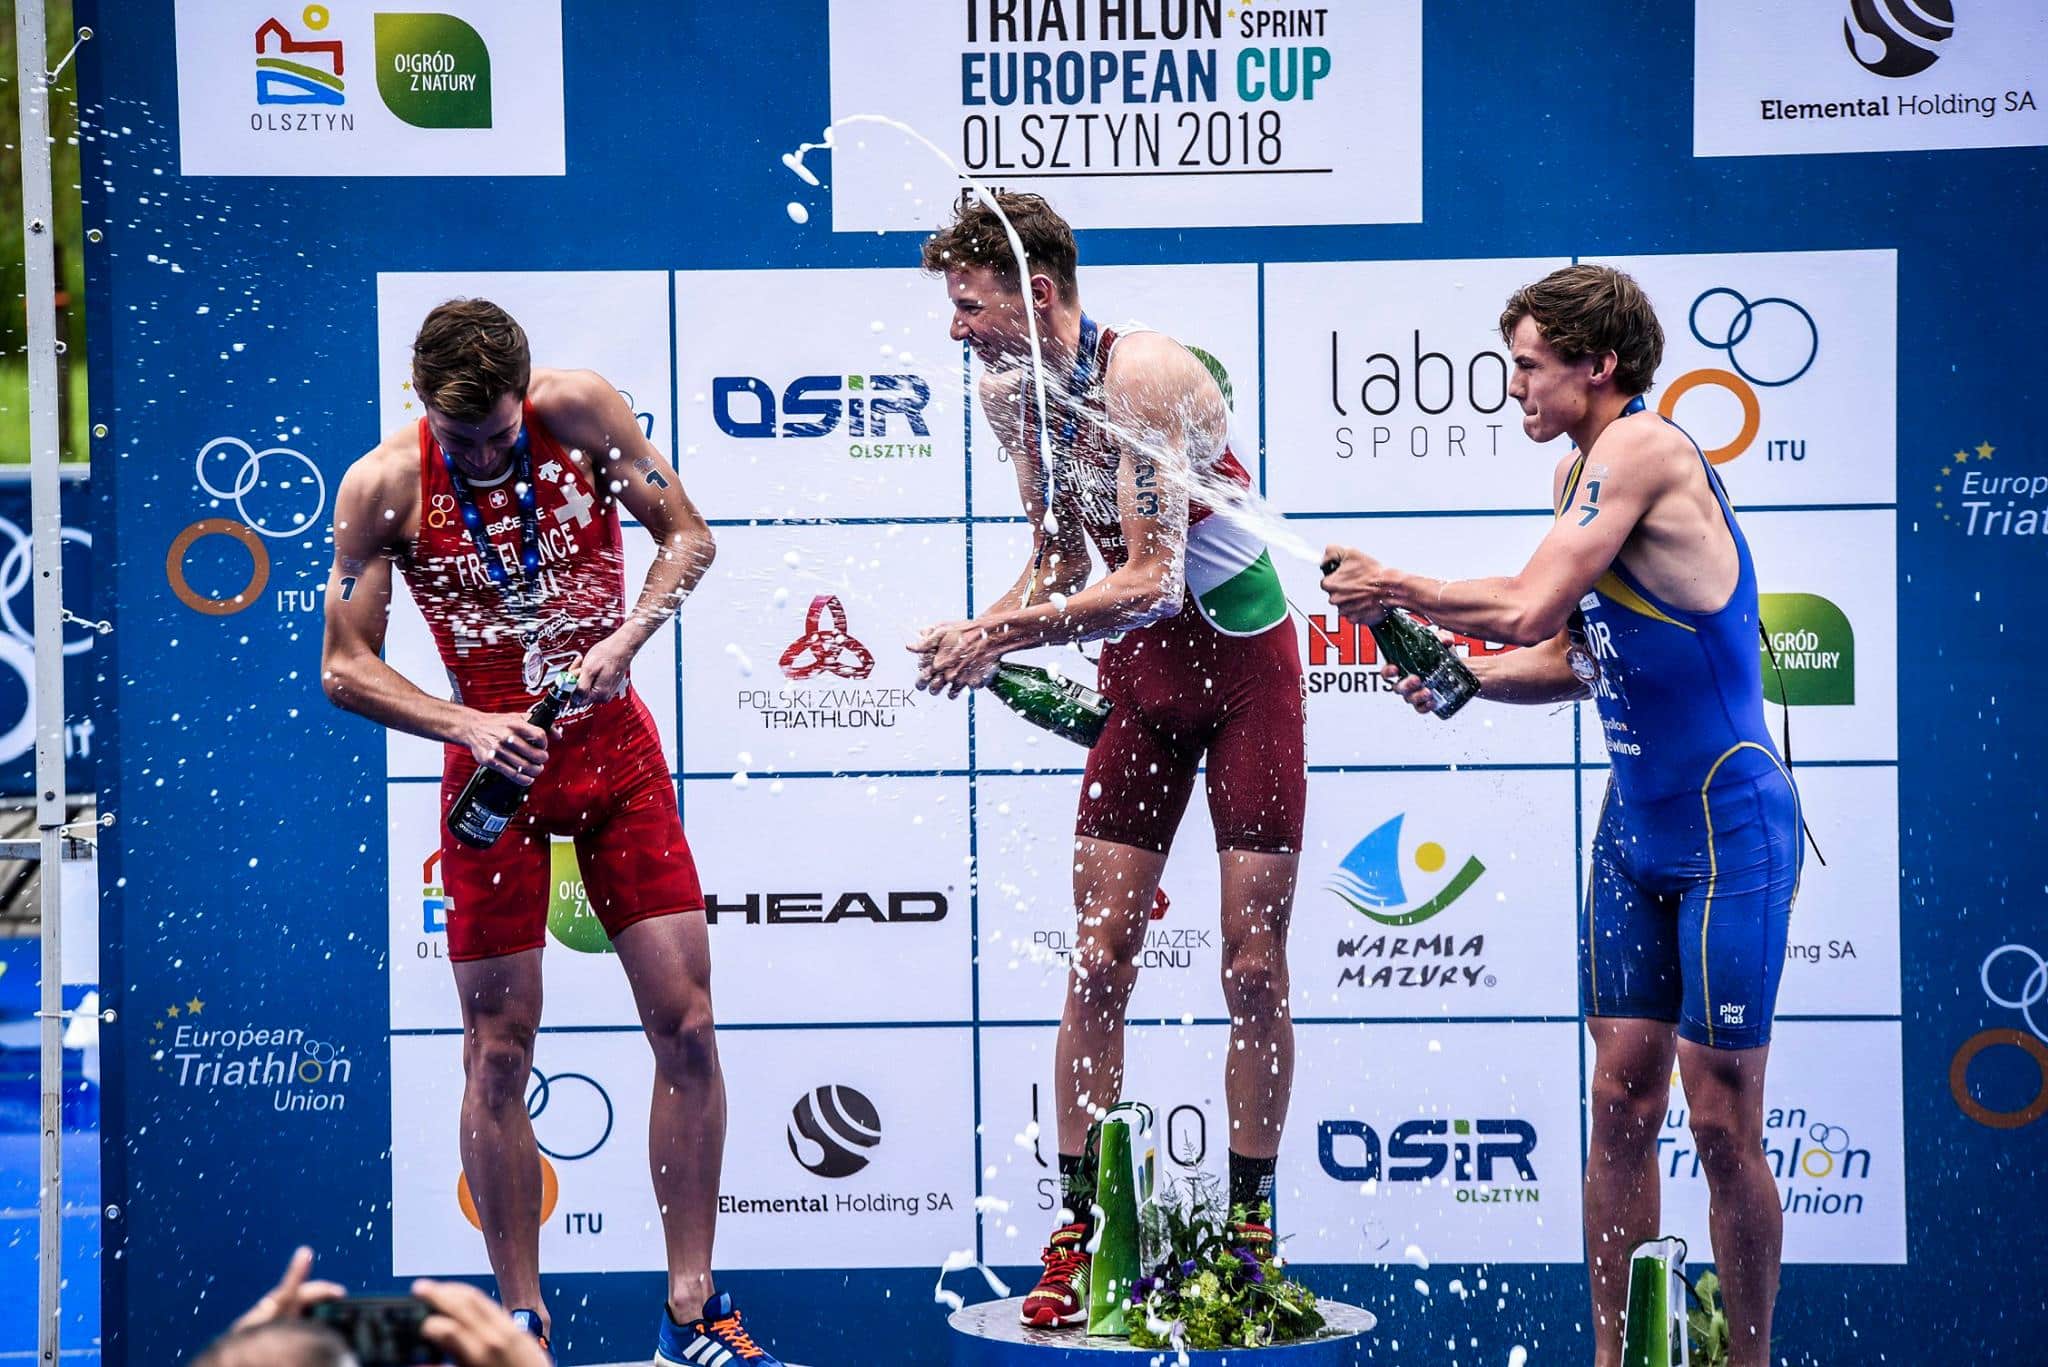 Mistrzostwa Europy w Triathlonie po raz w historii POLSKI!